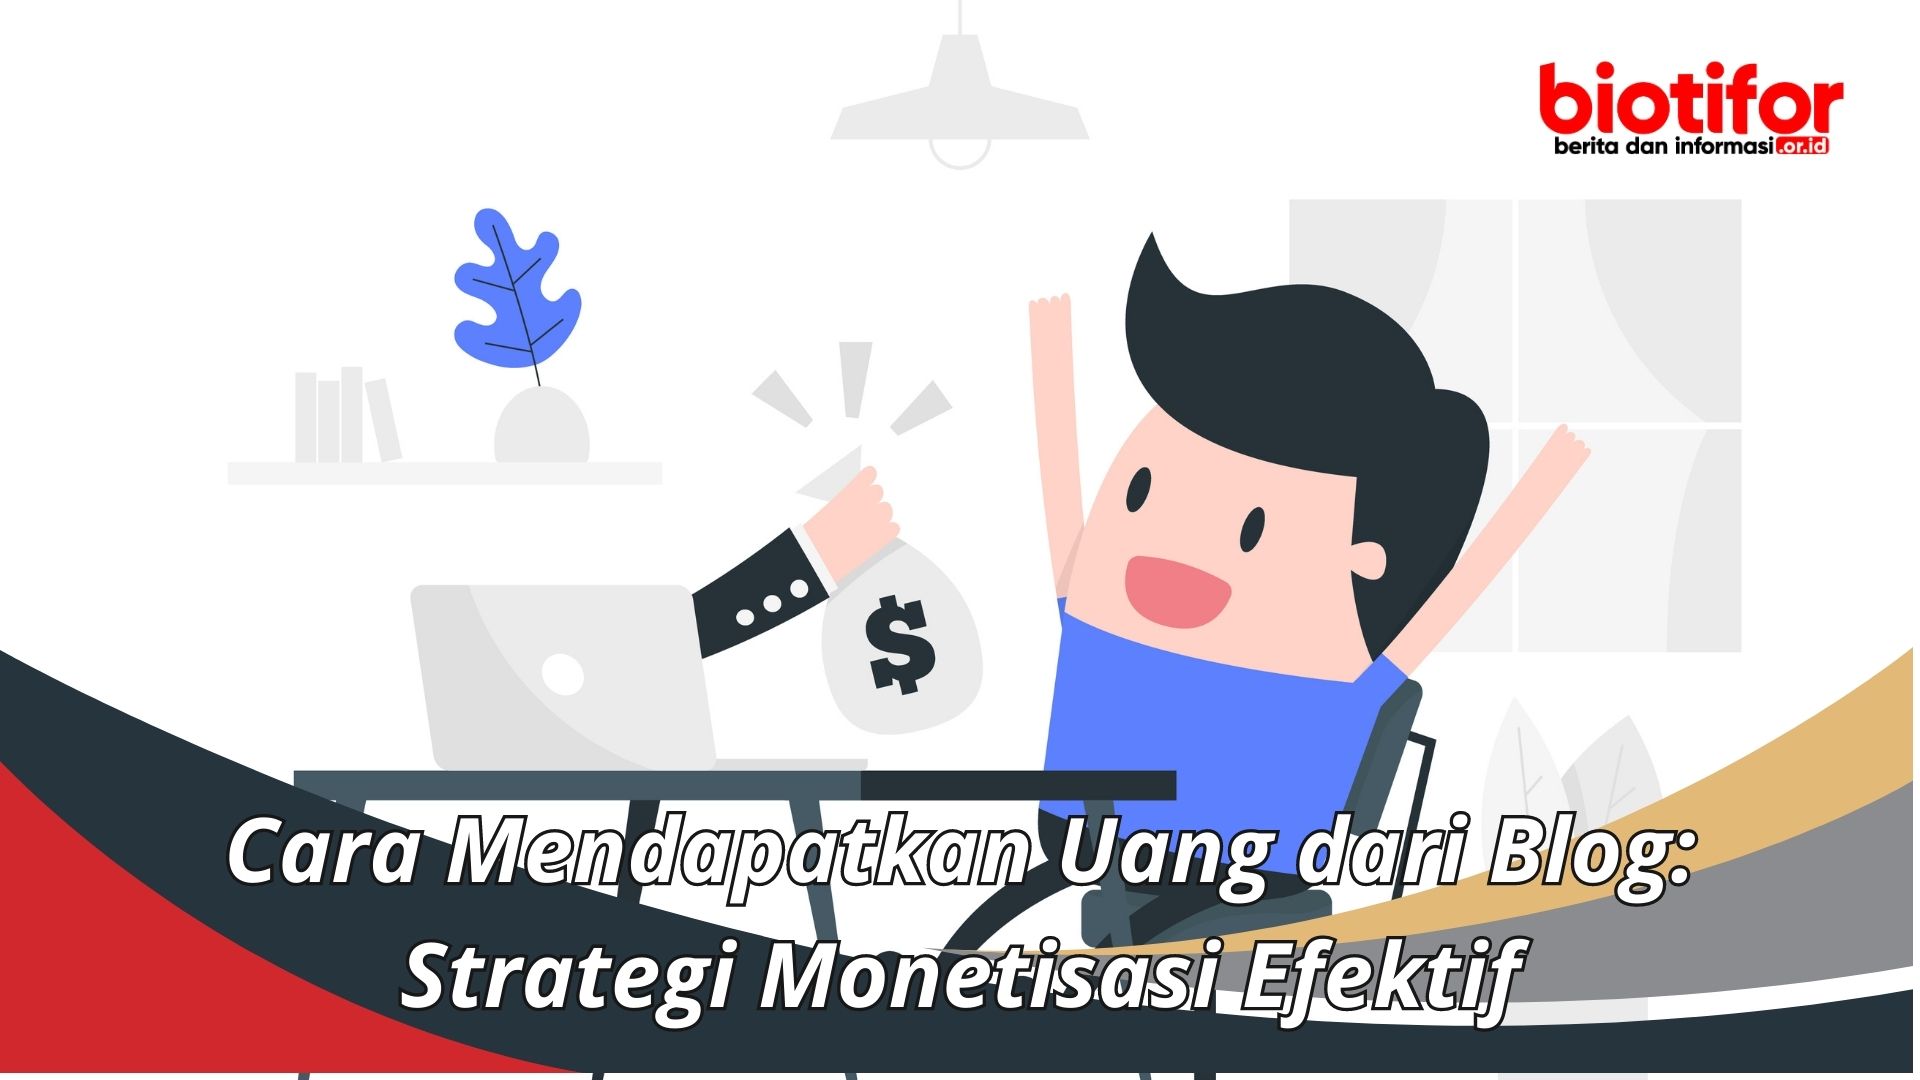 Cara Mendapatkan Uang dari Blog: Strategi Monetisasi Efektif